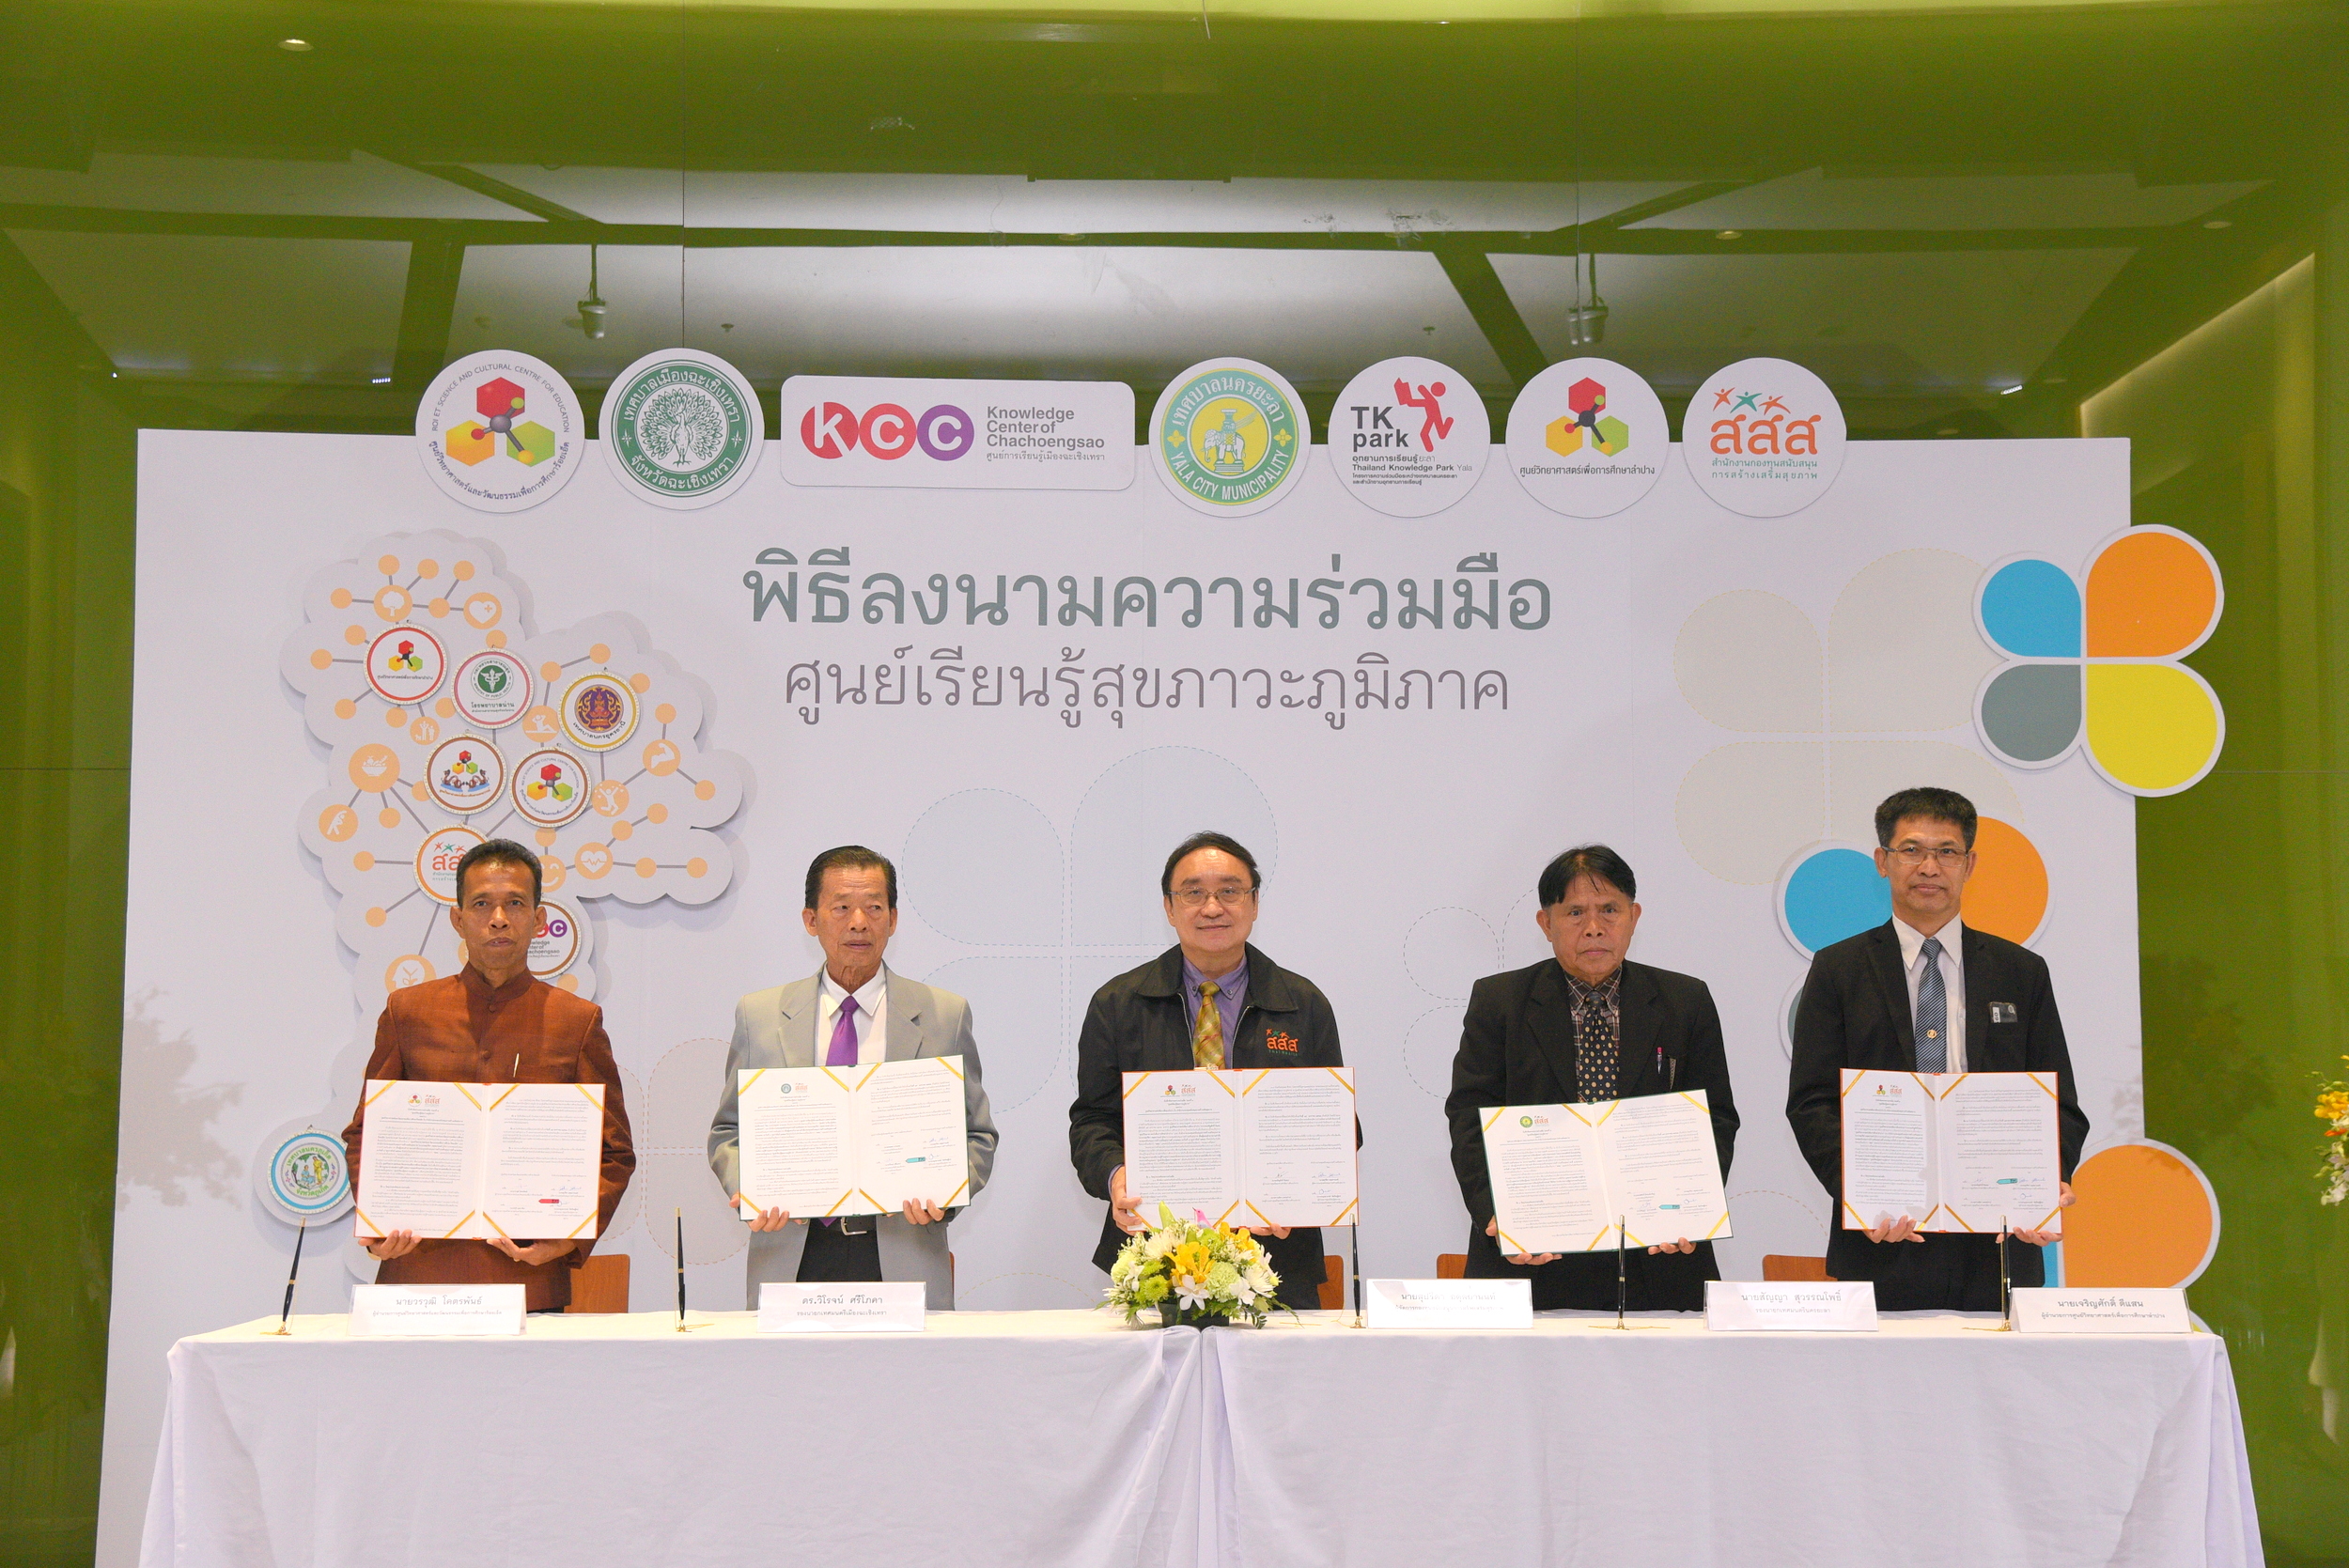 'ศูนย์เรียนรู้สุขภาวะภูมิภาค' ปลุกต้นแบบสุขภาวะทั่วถิ่นแดนไทย thaihealth